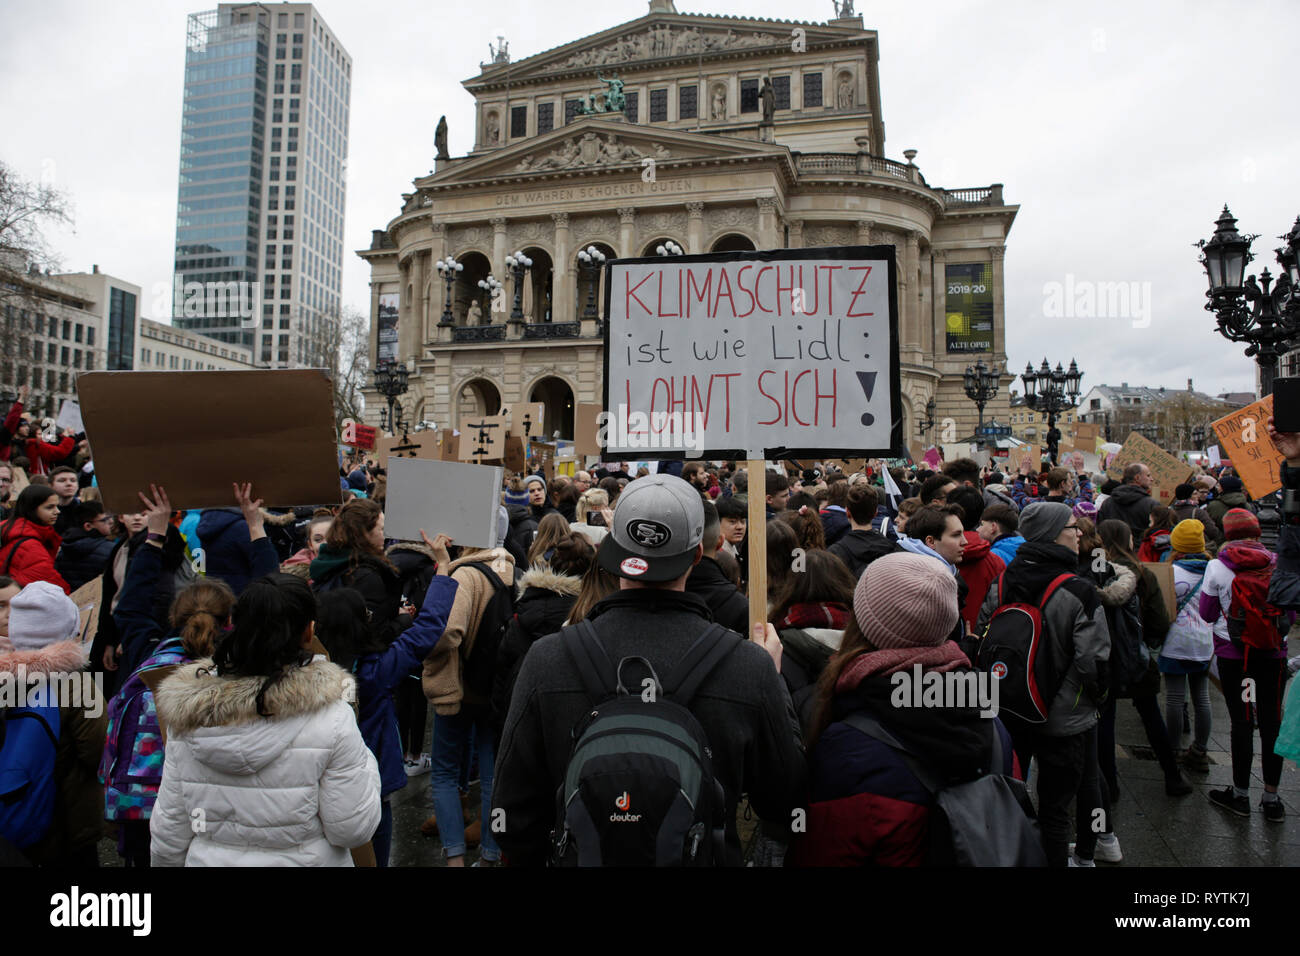 Francoforte, Germania. Il 15 marzo 2019. Un manifestante tiene un cartello che recita "la protezione del clima è come LIDL, ne è valsa la pena". Oltre 6 mila persone (per la maggior parte degli alunni che hanno saltato la scuola per prendere parte alla protesta) hanno marciato attraverso Francoforte, per protestare contro il cambiamento climatico e per l' introduzione di misure contro di essa. La protesta è stata parte del clima in tutto il mondo il giorno di sciopero dal movimento FridaysForFuture, iniziato da Greta Thunberg in Svezia. Credito: Michael Debets/Alamy Live News Foto Stock